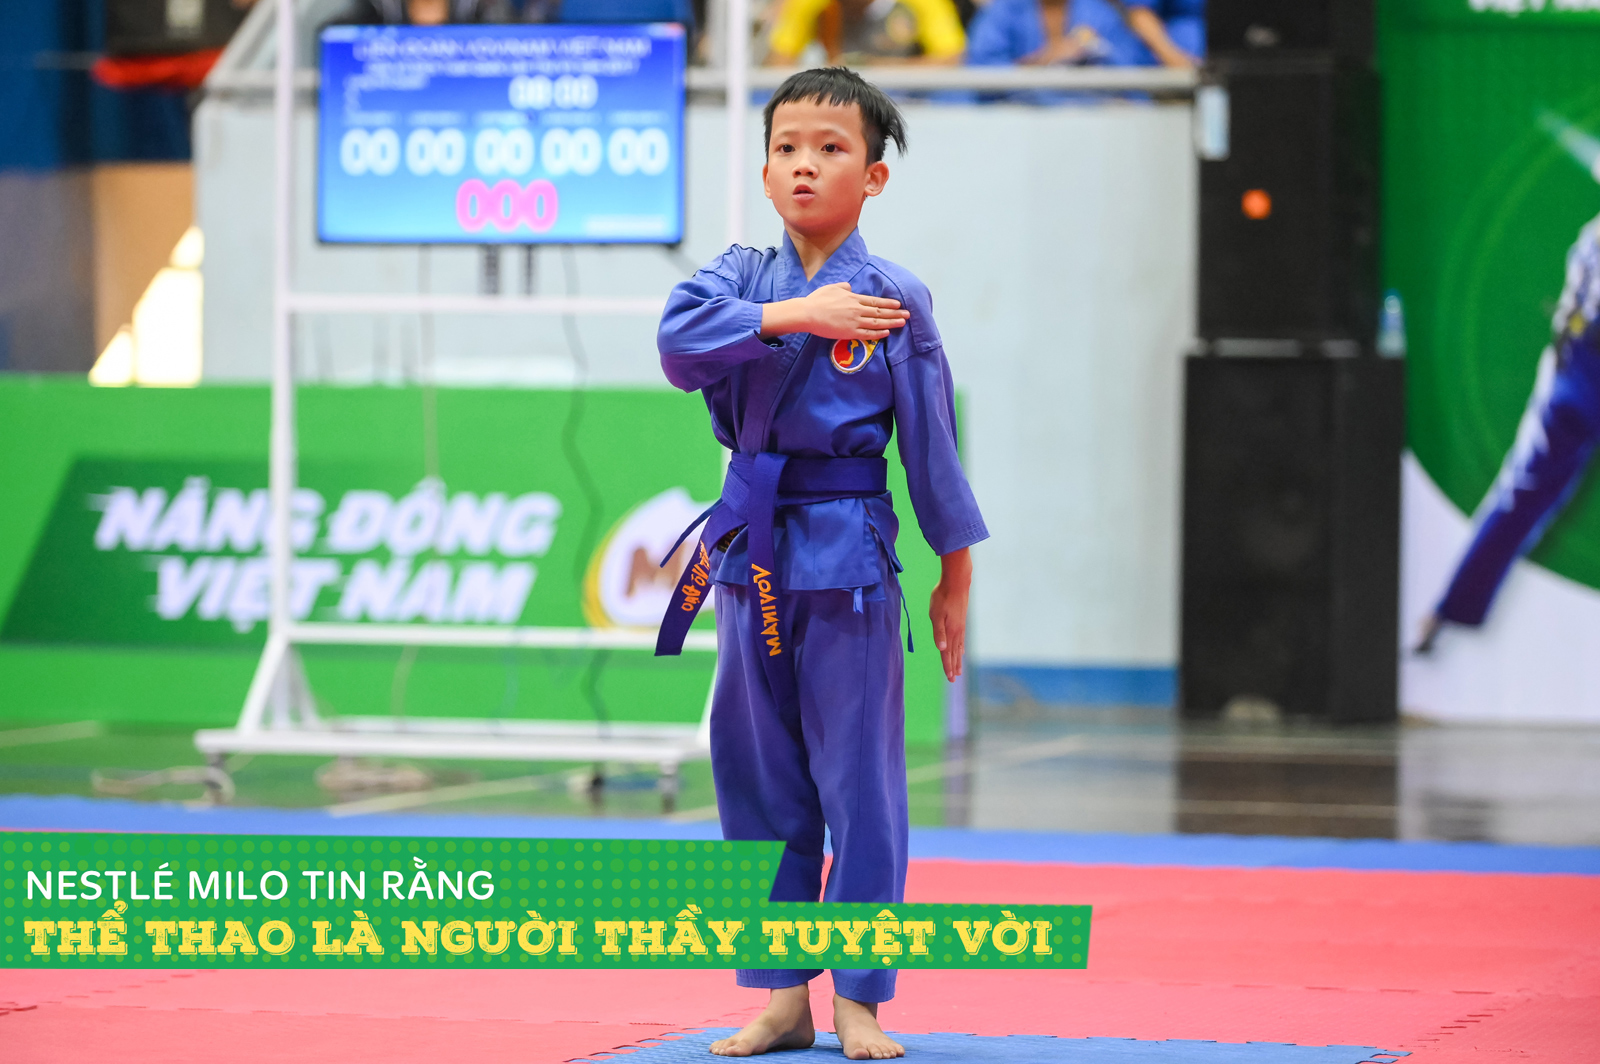 Thể thao cho trẻ em Việt Nam 2019: Những điểm nhấn chắp cánh giấc mơ vô địch như U22 Việt Nam - 13